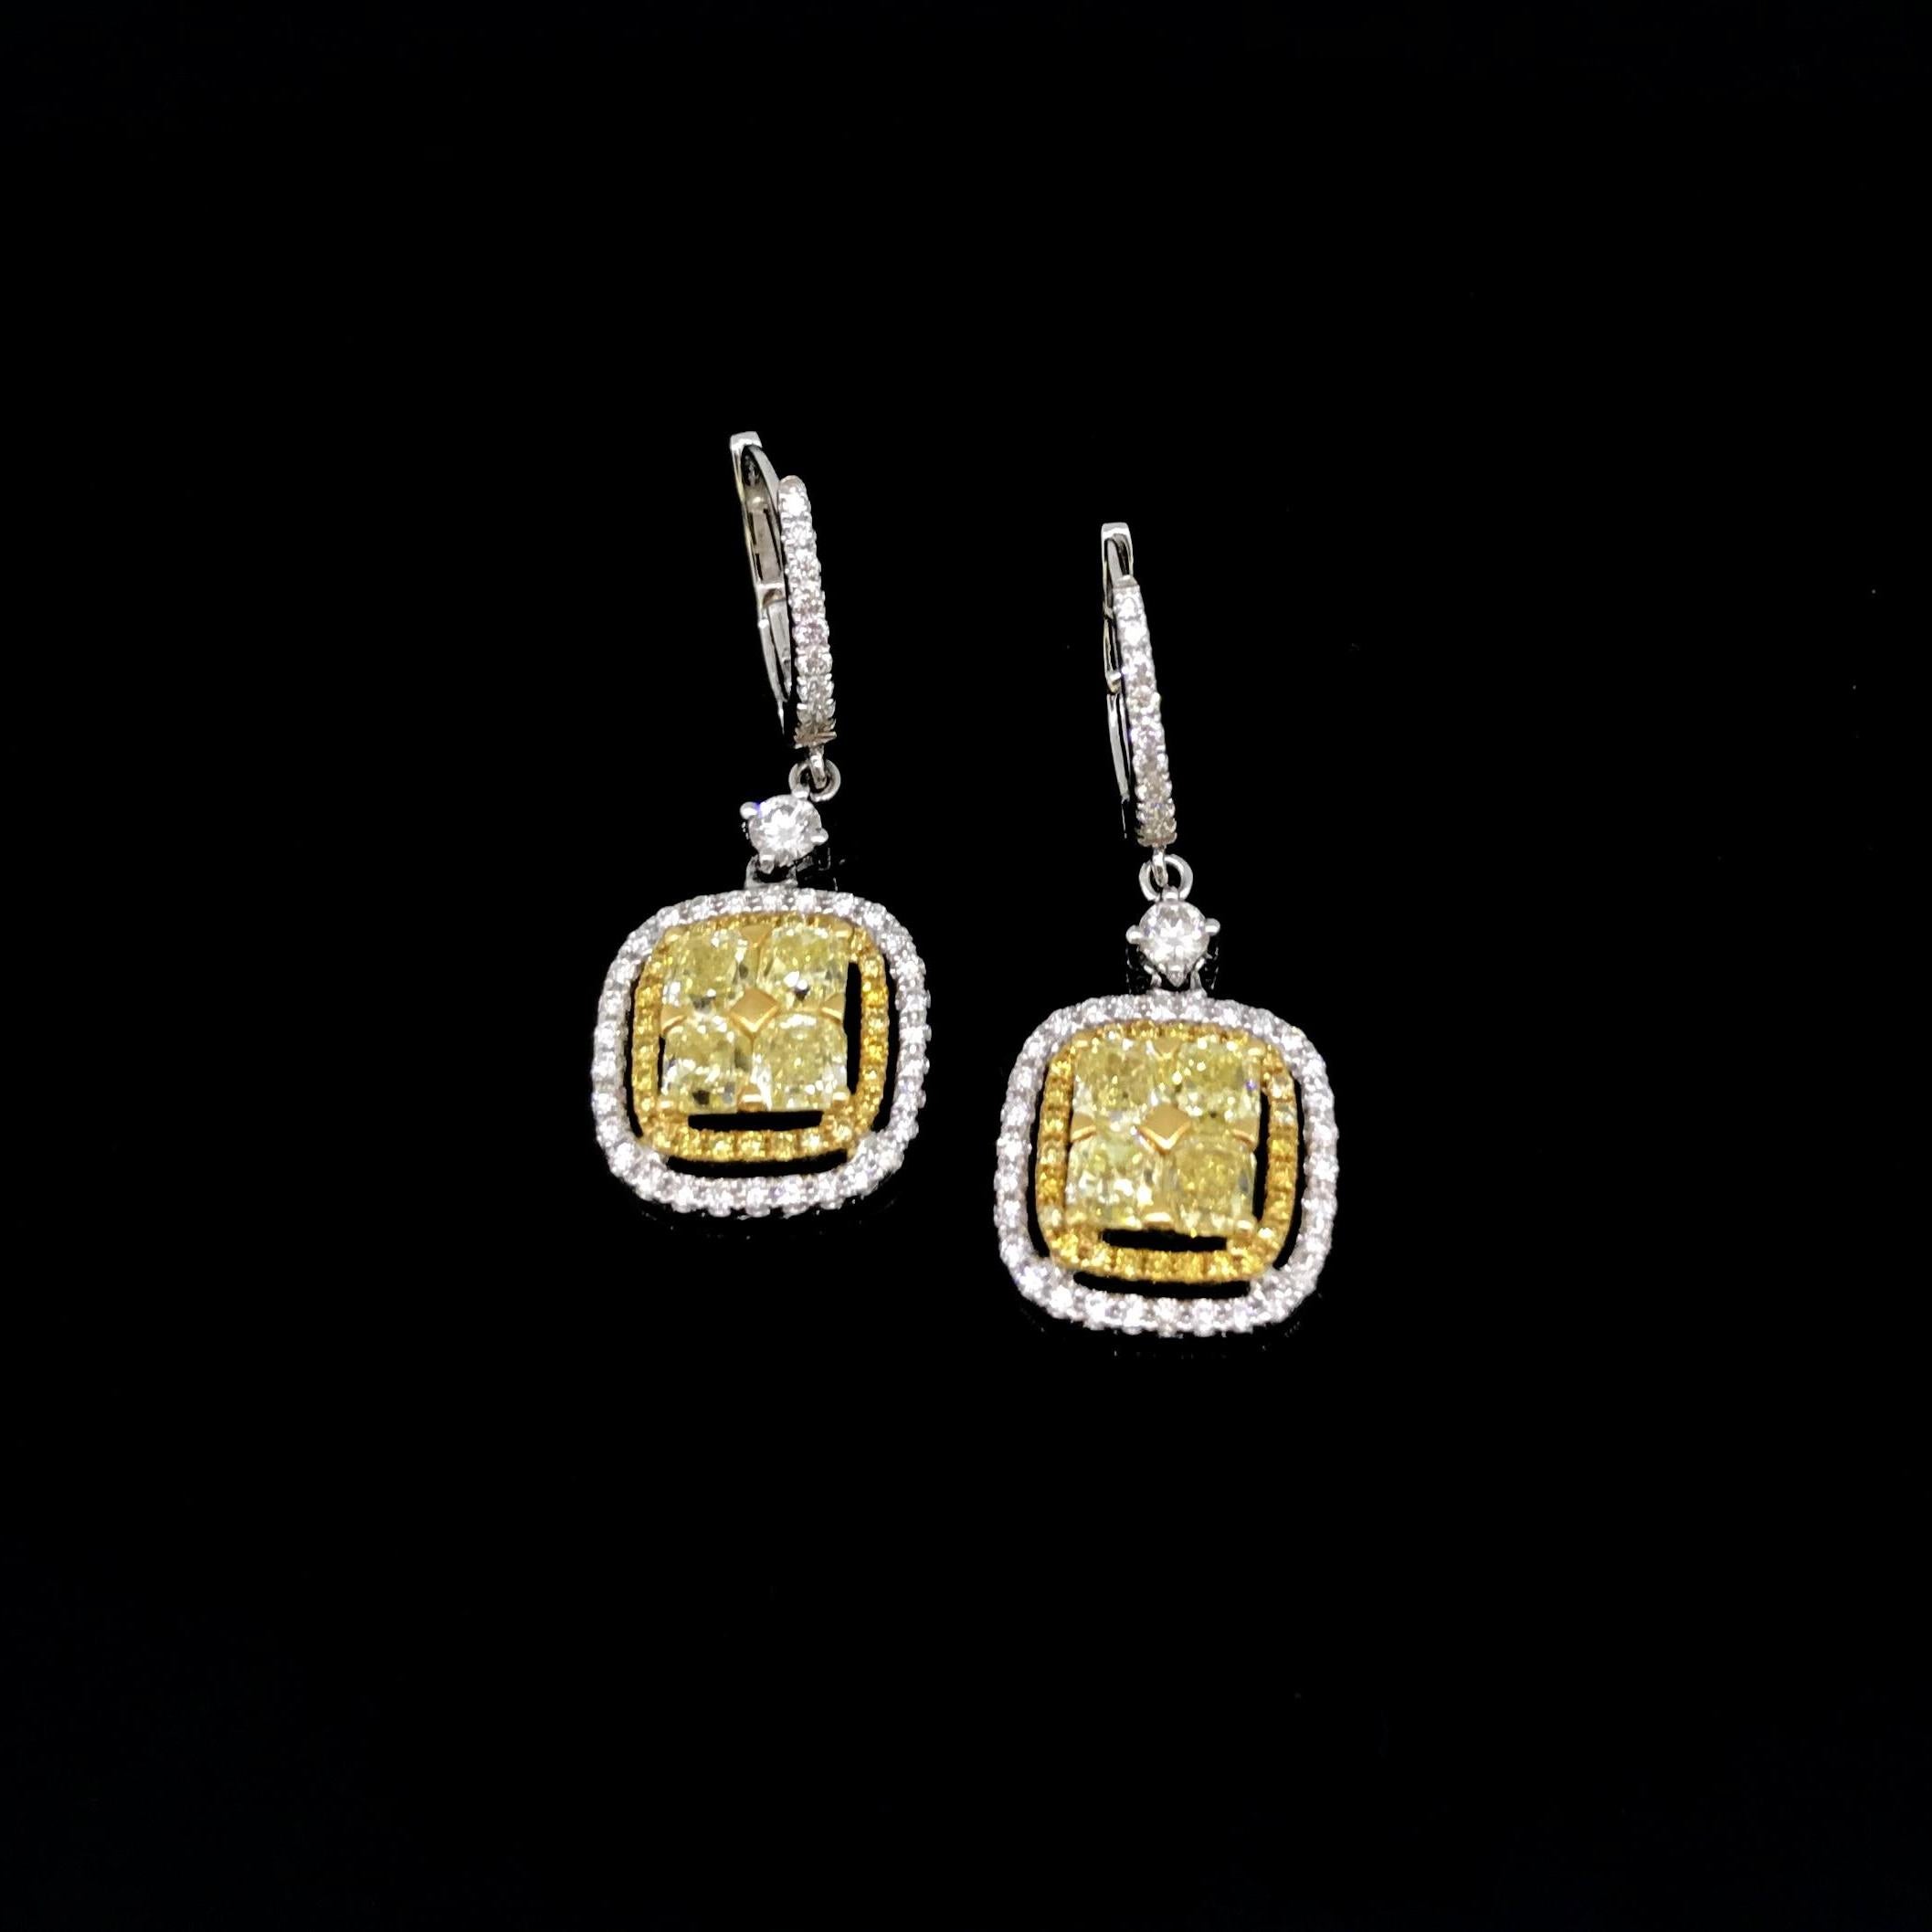 Dieses schöne Paar Ohrringe ist komplett aus 18 Karat Weißgold gefertigt. Jeder Ohrring ist mit 4 quadratischen gelben Kissen-Diamanten besetzt. Diese sind mit runden gelben Diamanten im Brillantschliff und schließlich mit weißen Diamanten umgeben.